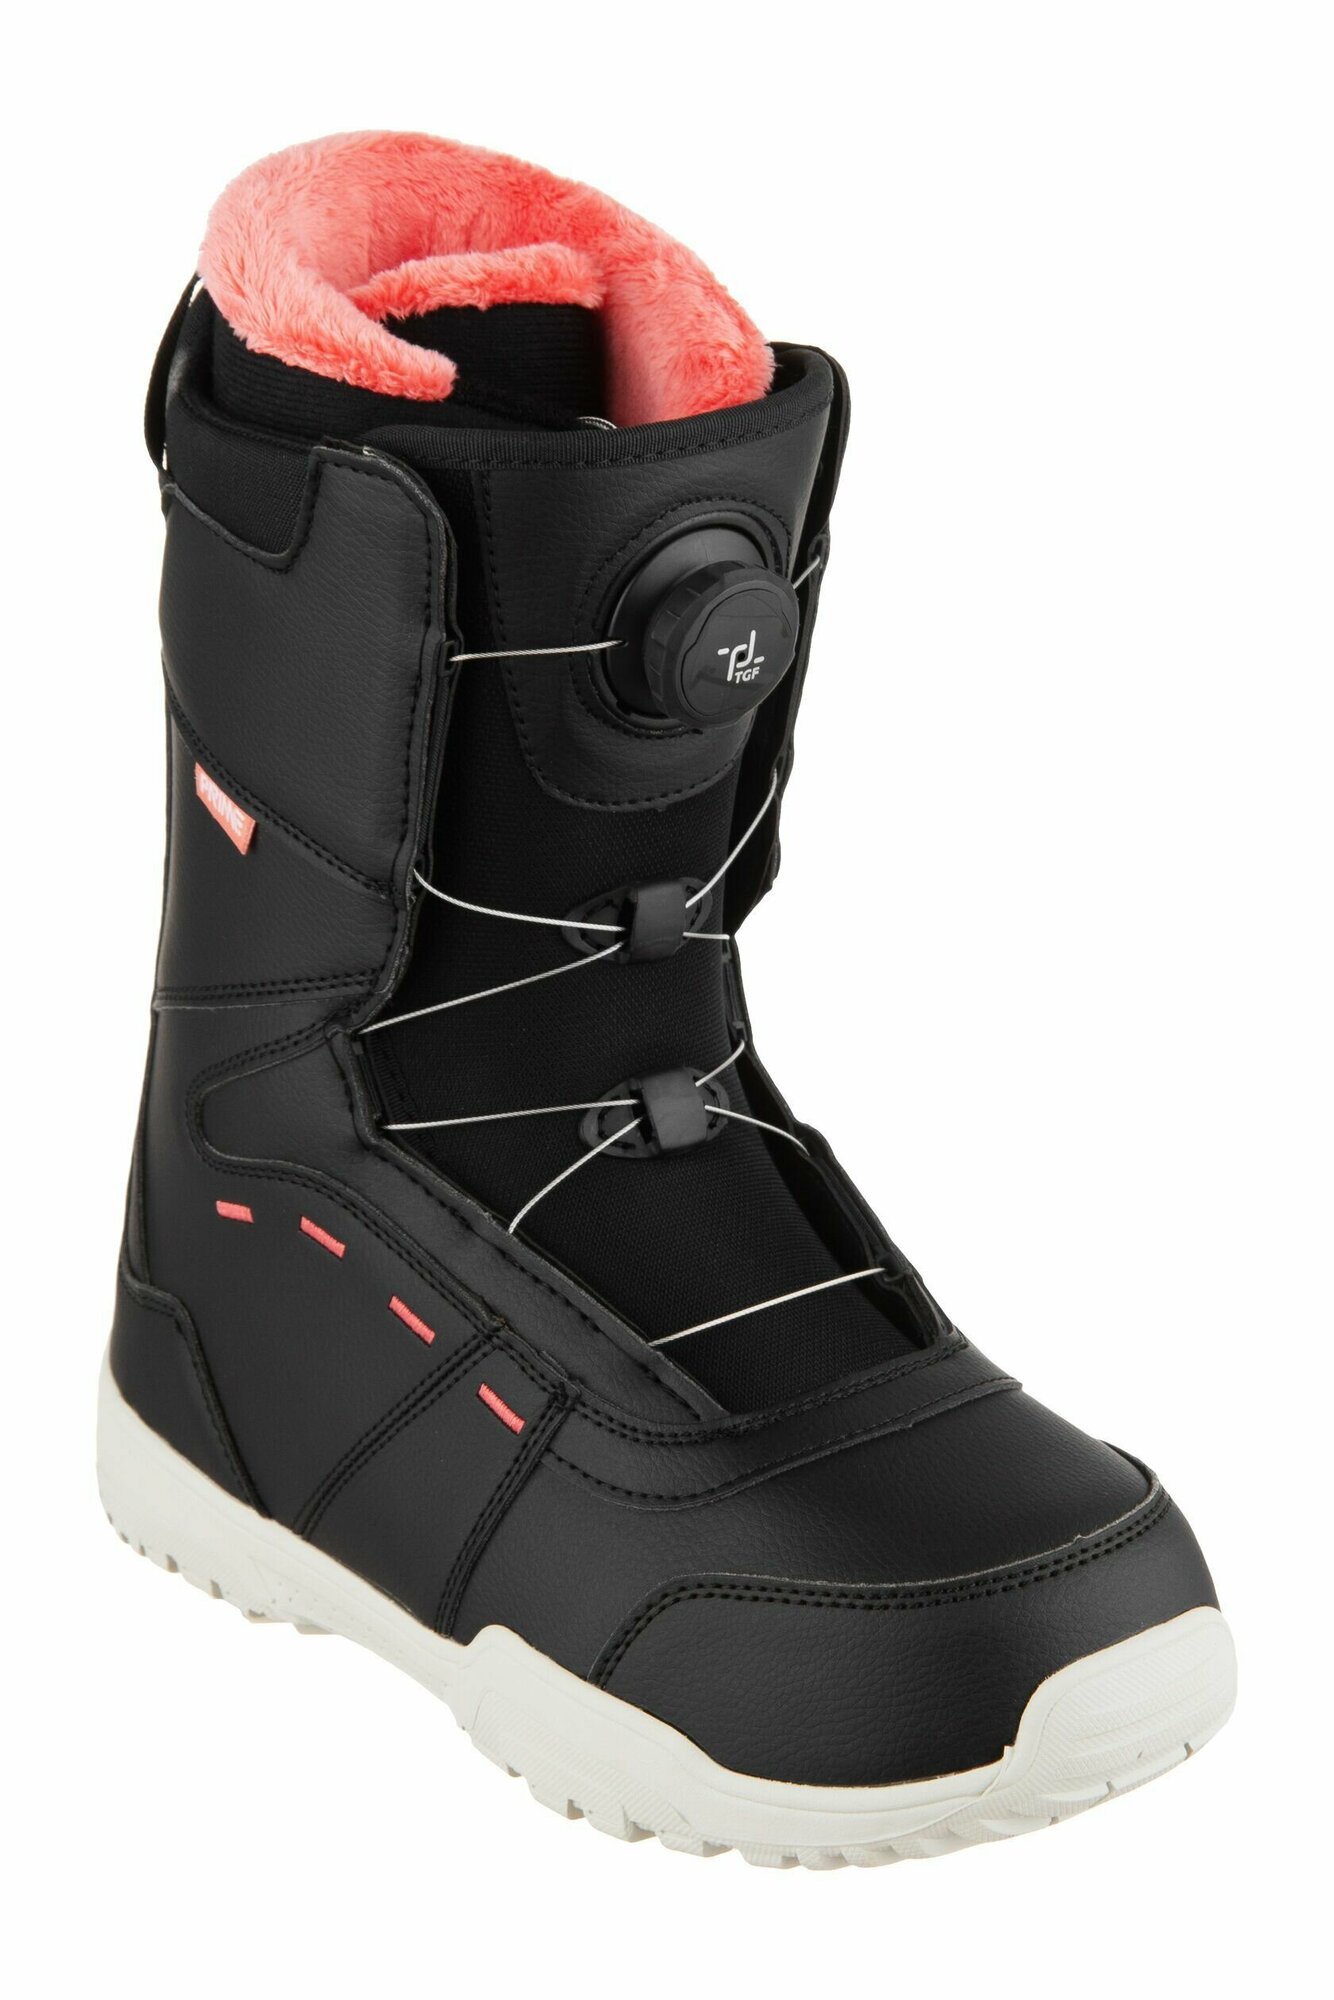 Ботинки сноубордические PRIME COOL-C1 TGF Black-Red (быстрая шнуровка) (39 RU / 26 cm)